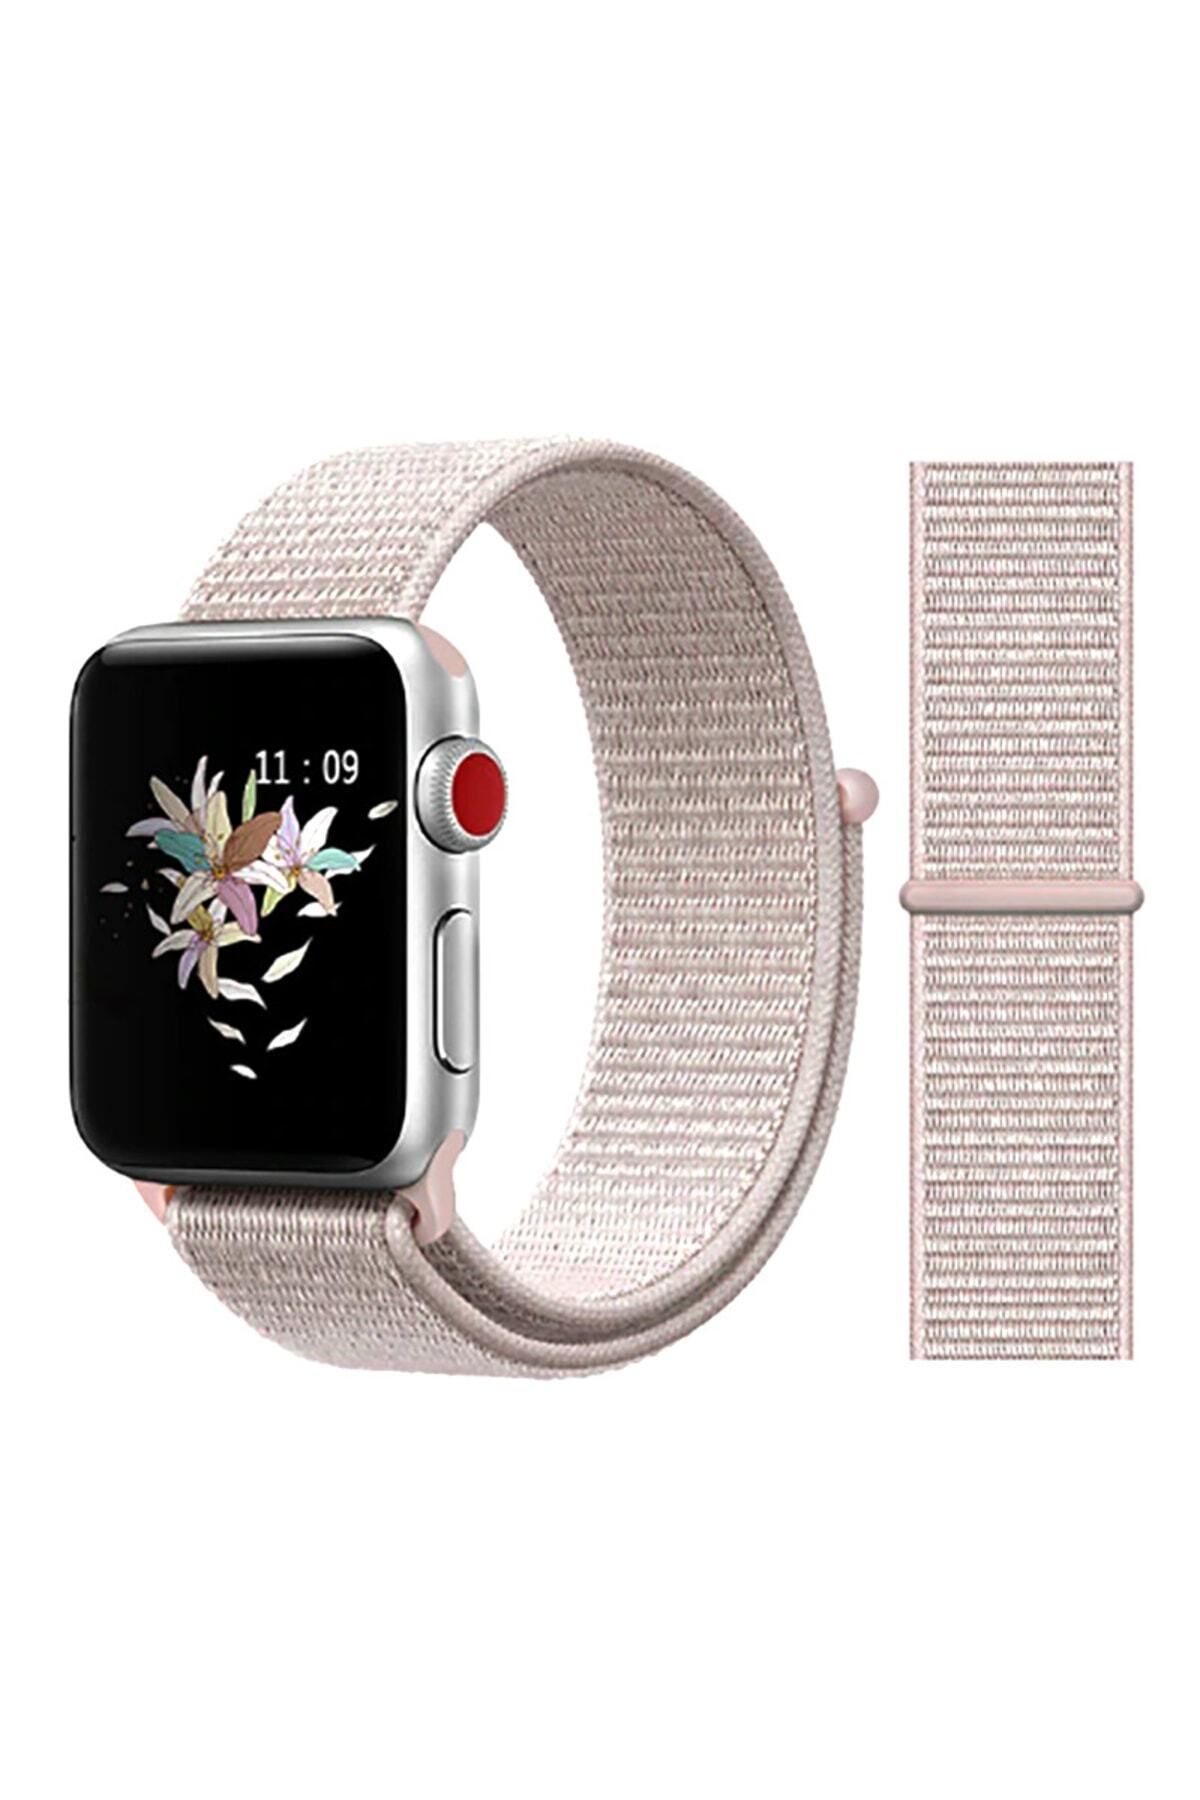 hzrteknoloji Apple Watch 42mm Için Uyumlu Krd-03 Hasır Kordon Akıllı Saat Bileklik Kayışı Kordonu